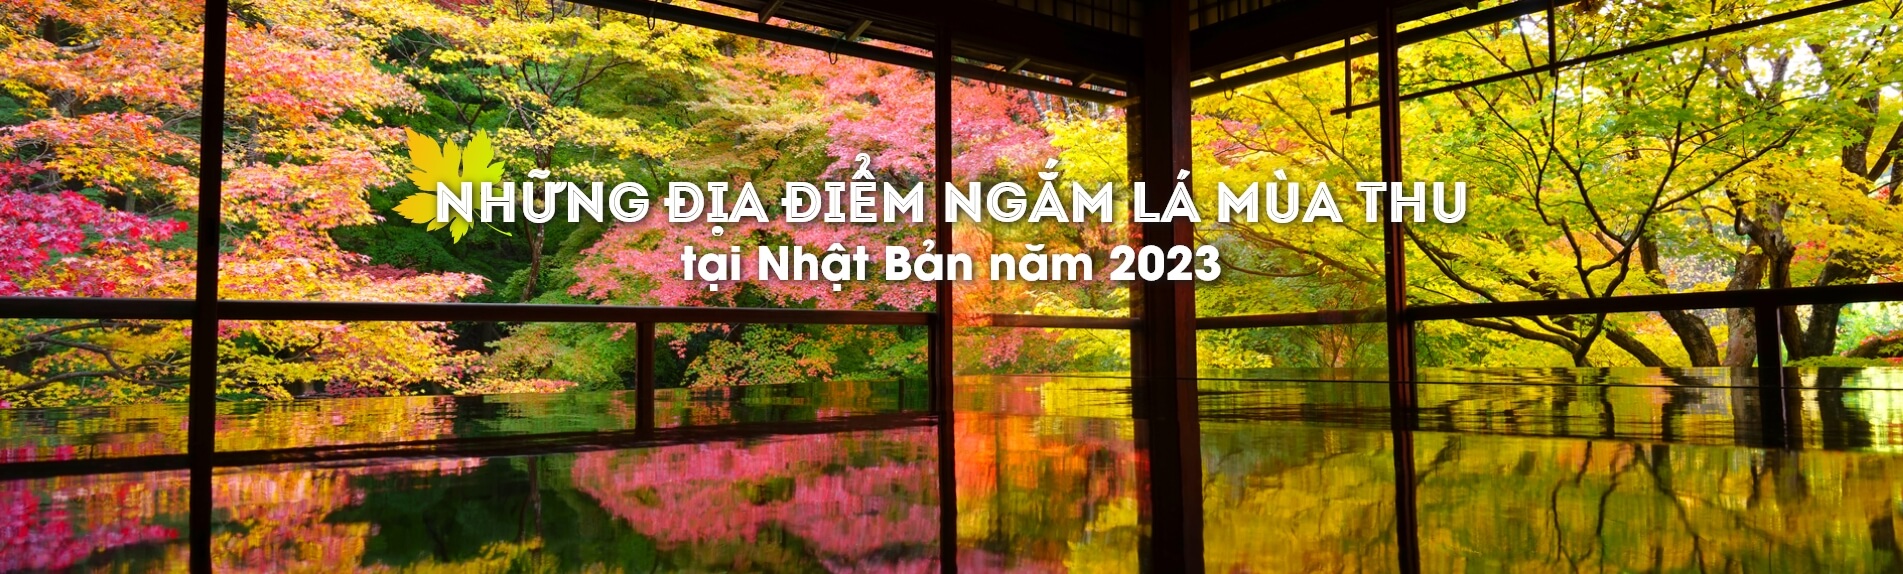 Những địa điểm ngắm lá mùa thu tại Nhật Bản năm 2023